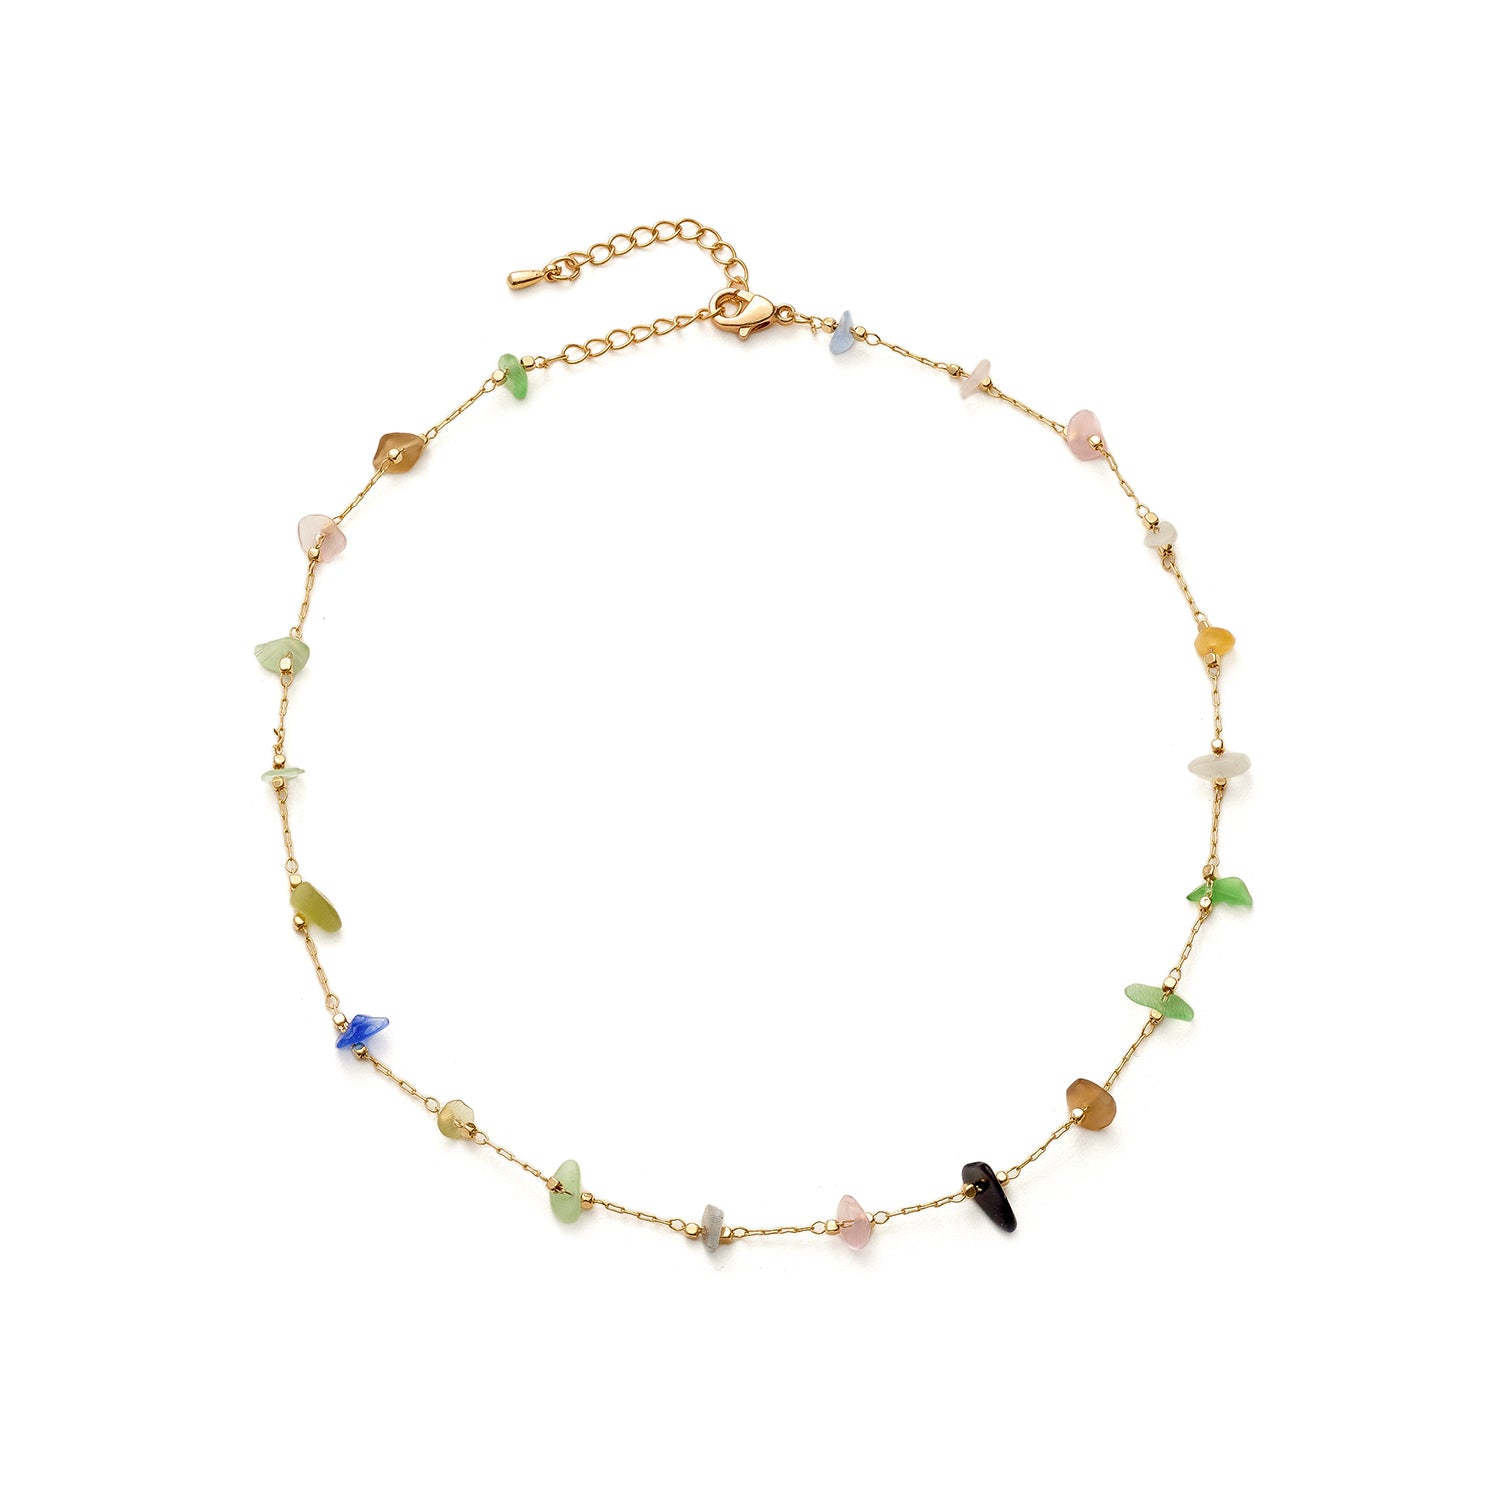 Cold Multi-Colored Stone Necklace